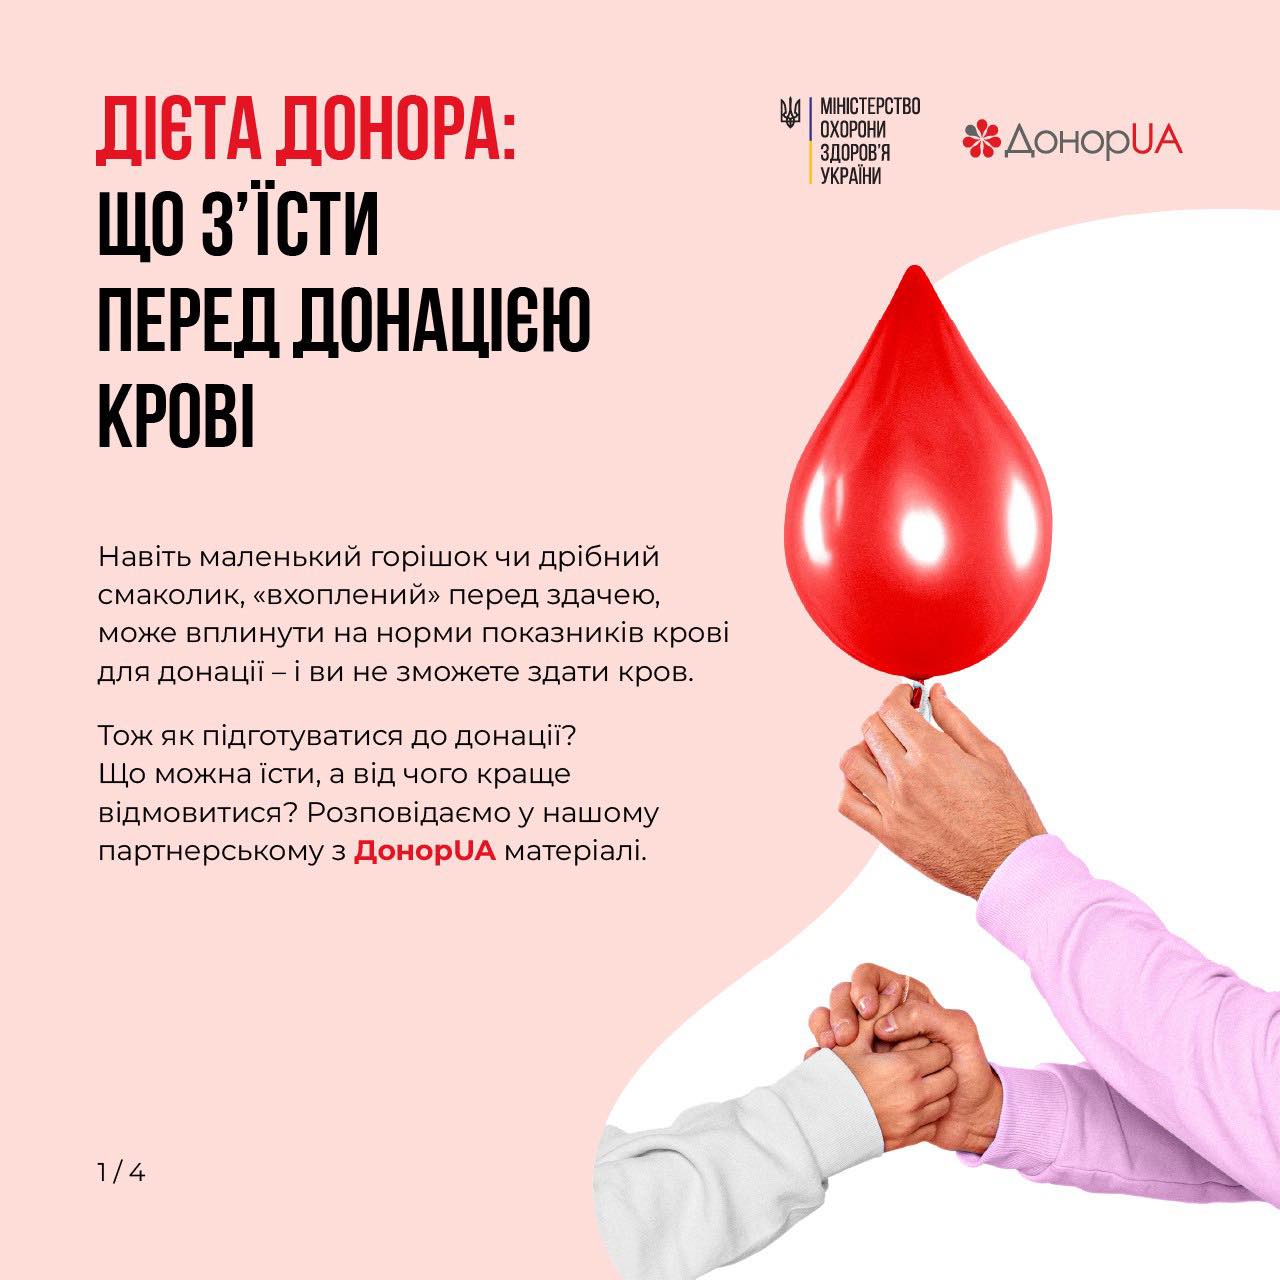 Донорство крові – це врятовані життя!